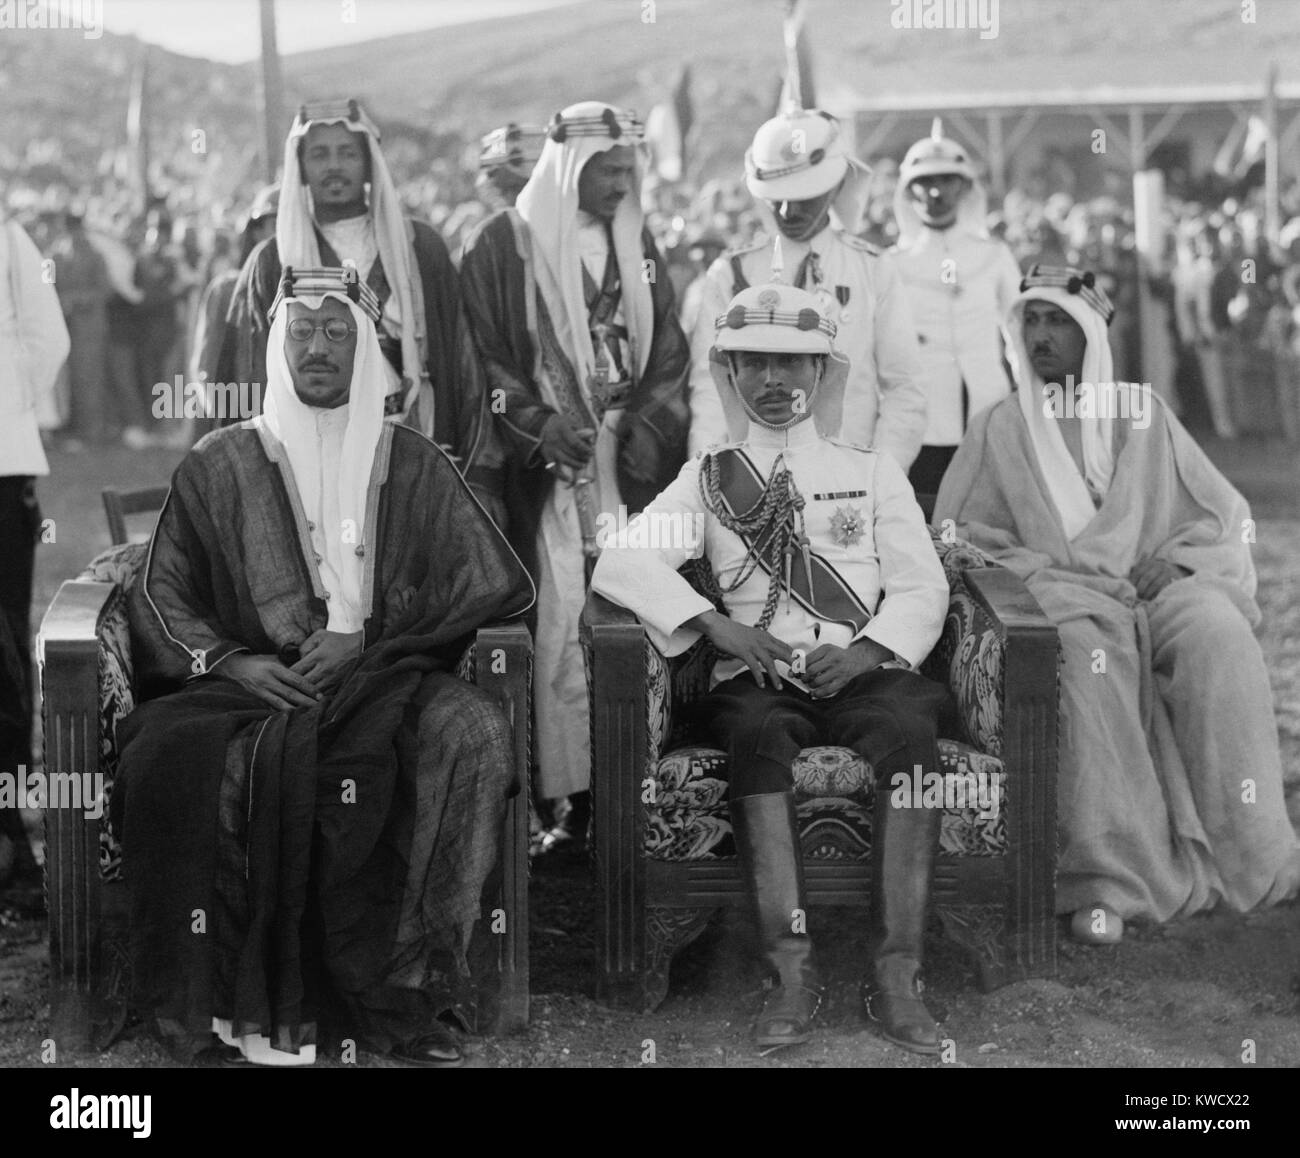 Le roi Saoud et Talal bin Abdullah (Emir Abdullahs fils et futur roi Talal I) dans Ammon, en Jordanie. En 1932, Saoud a consolidé son pouvoir sur une grande partie de la péninsule arabe, la fondation du Royaume d'Arabie saoudite (BSLOC 2017 1 98) Banque D'Images